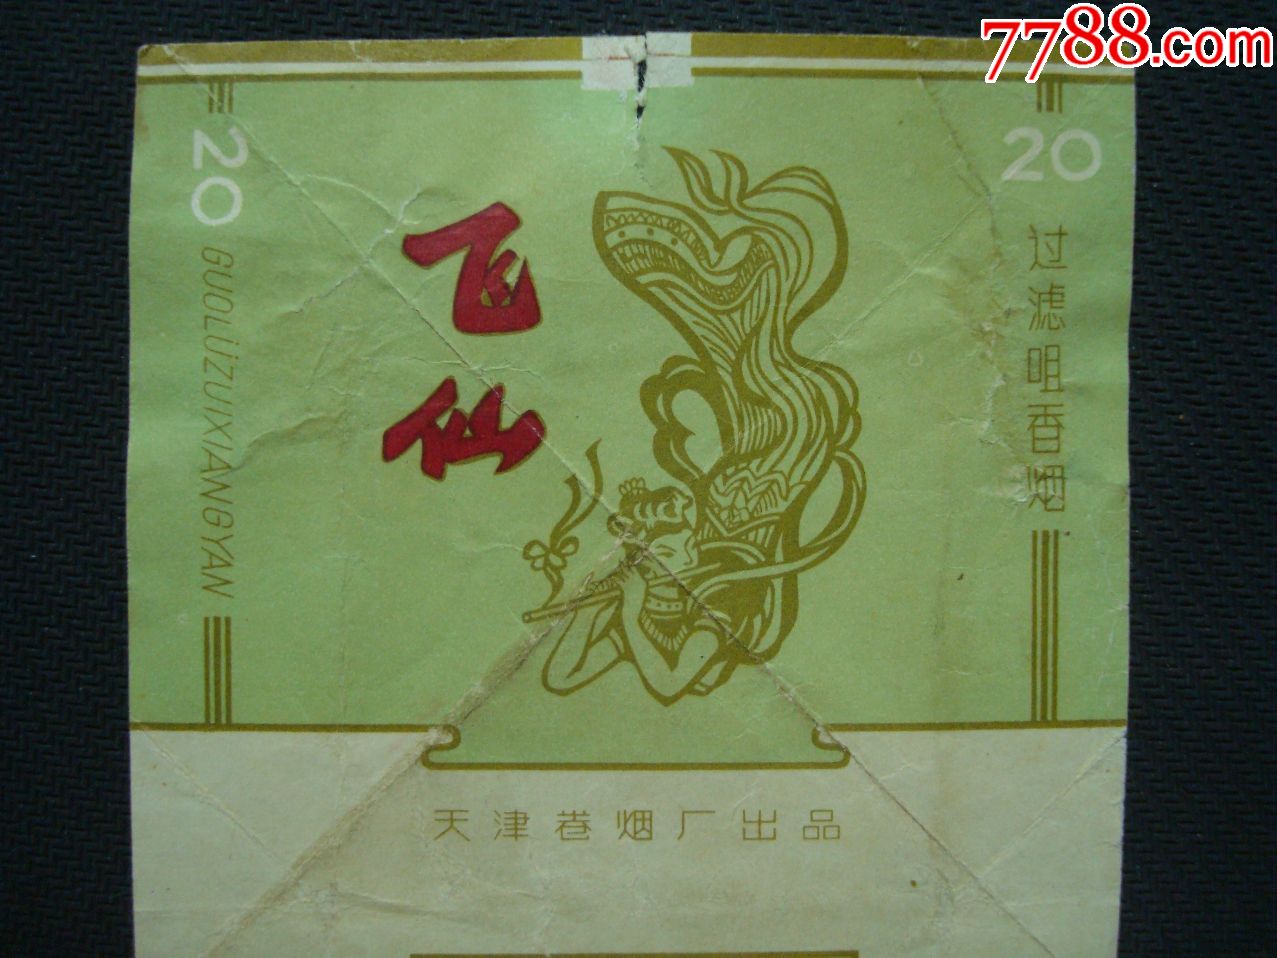 飞仙――天津卷烟厂出品